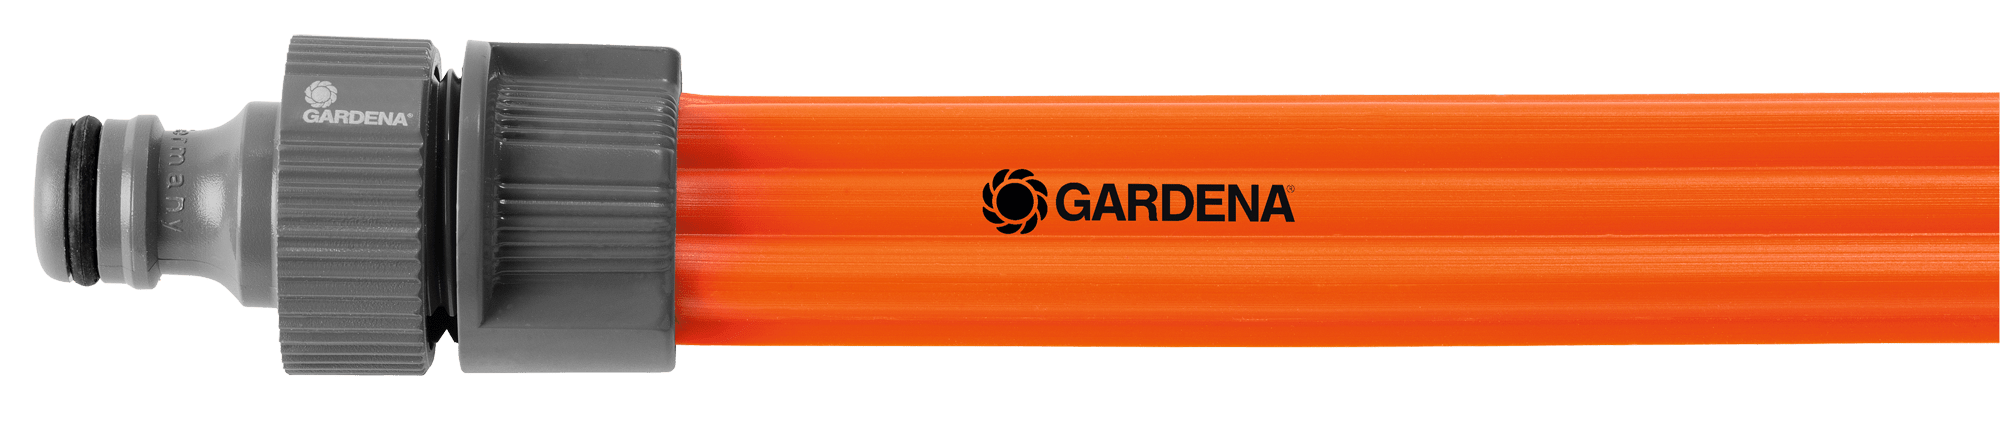 Gardena Schlauch-Regner orange, 15m